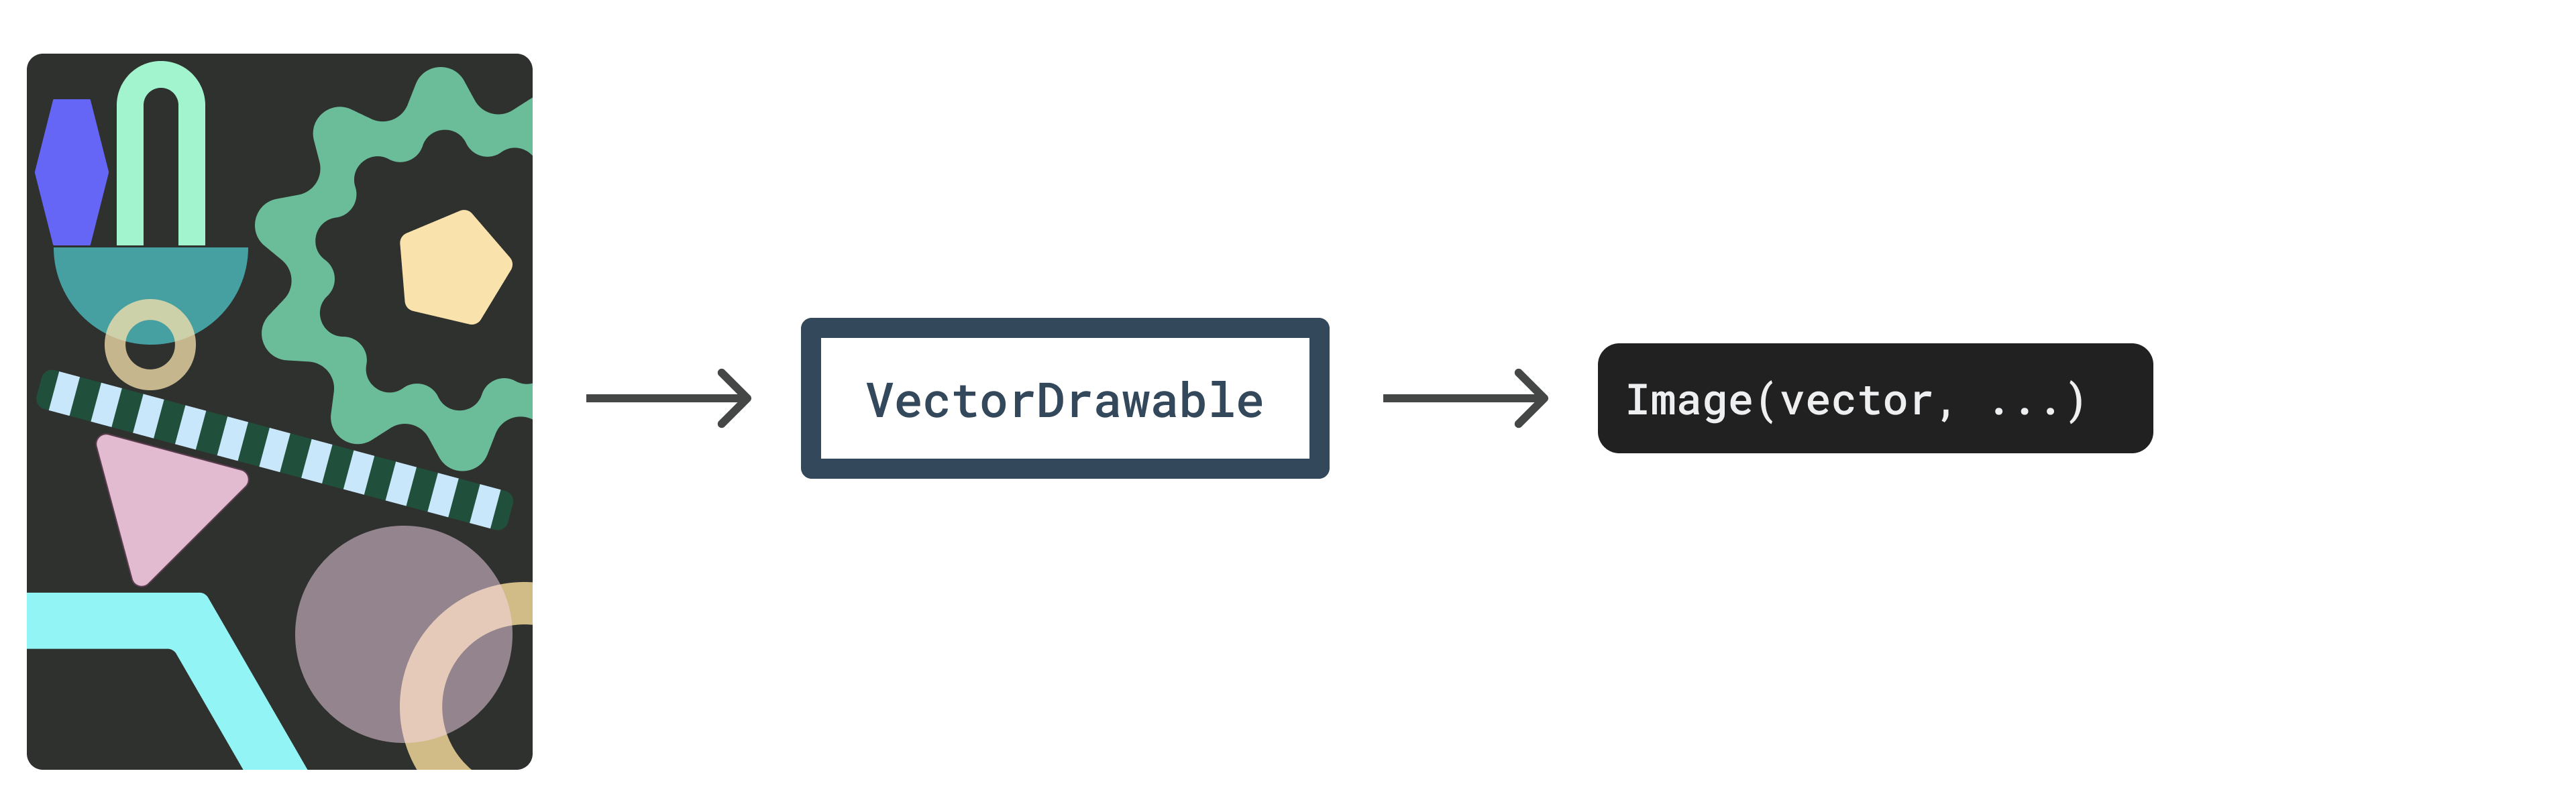 Diagrama - Camadas vetoriais convertidas para VectorDrawable convertido para uma imagem